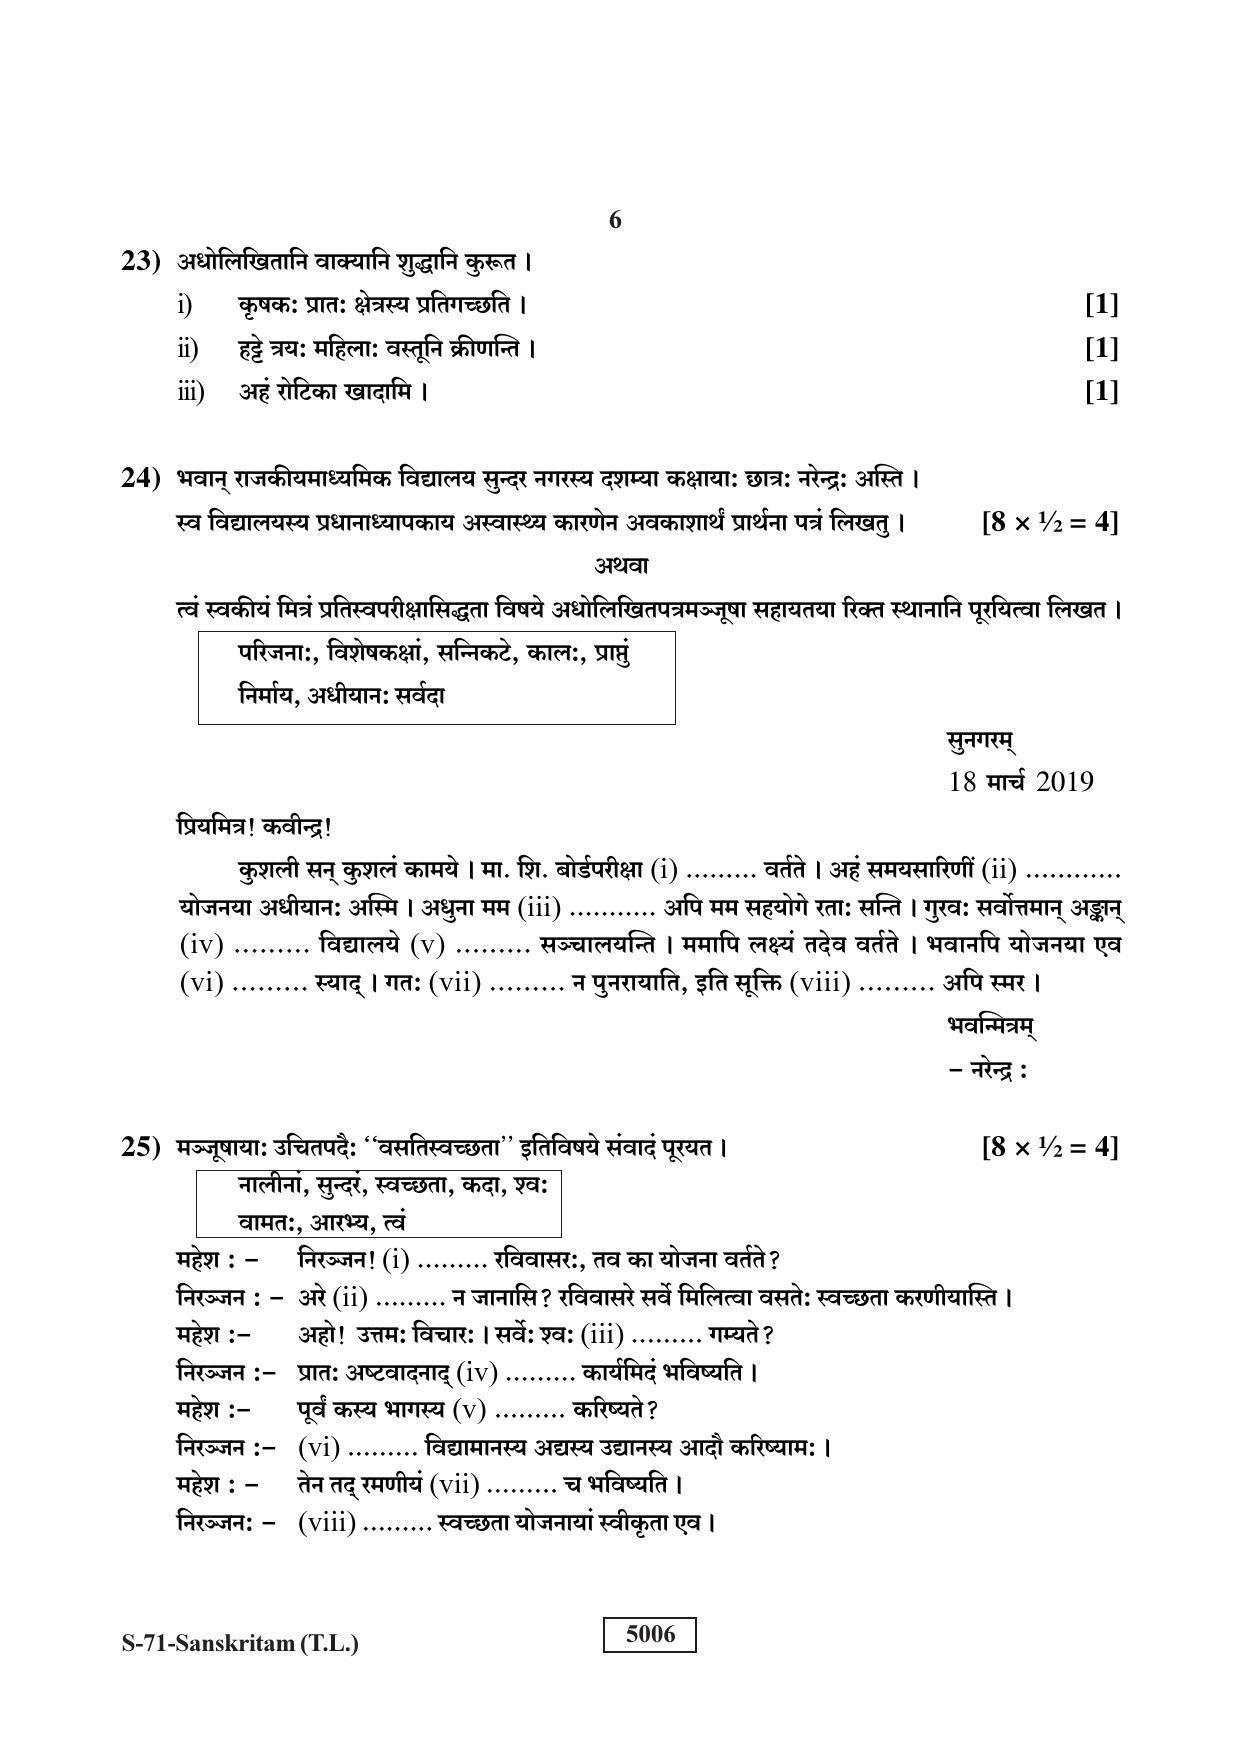 RBSE Class 10 Sanskrit (T.L.) 2019 Question Paper - Page 6